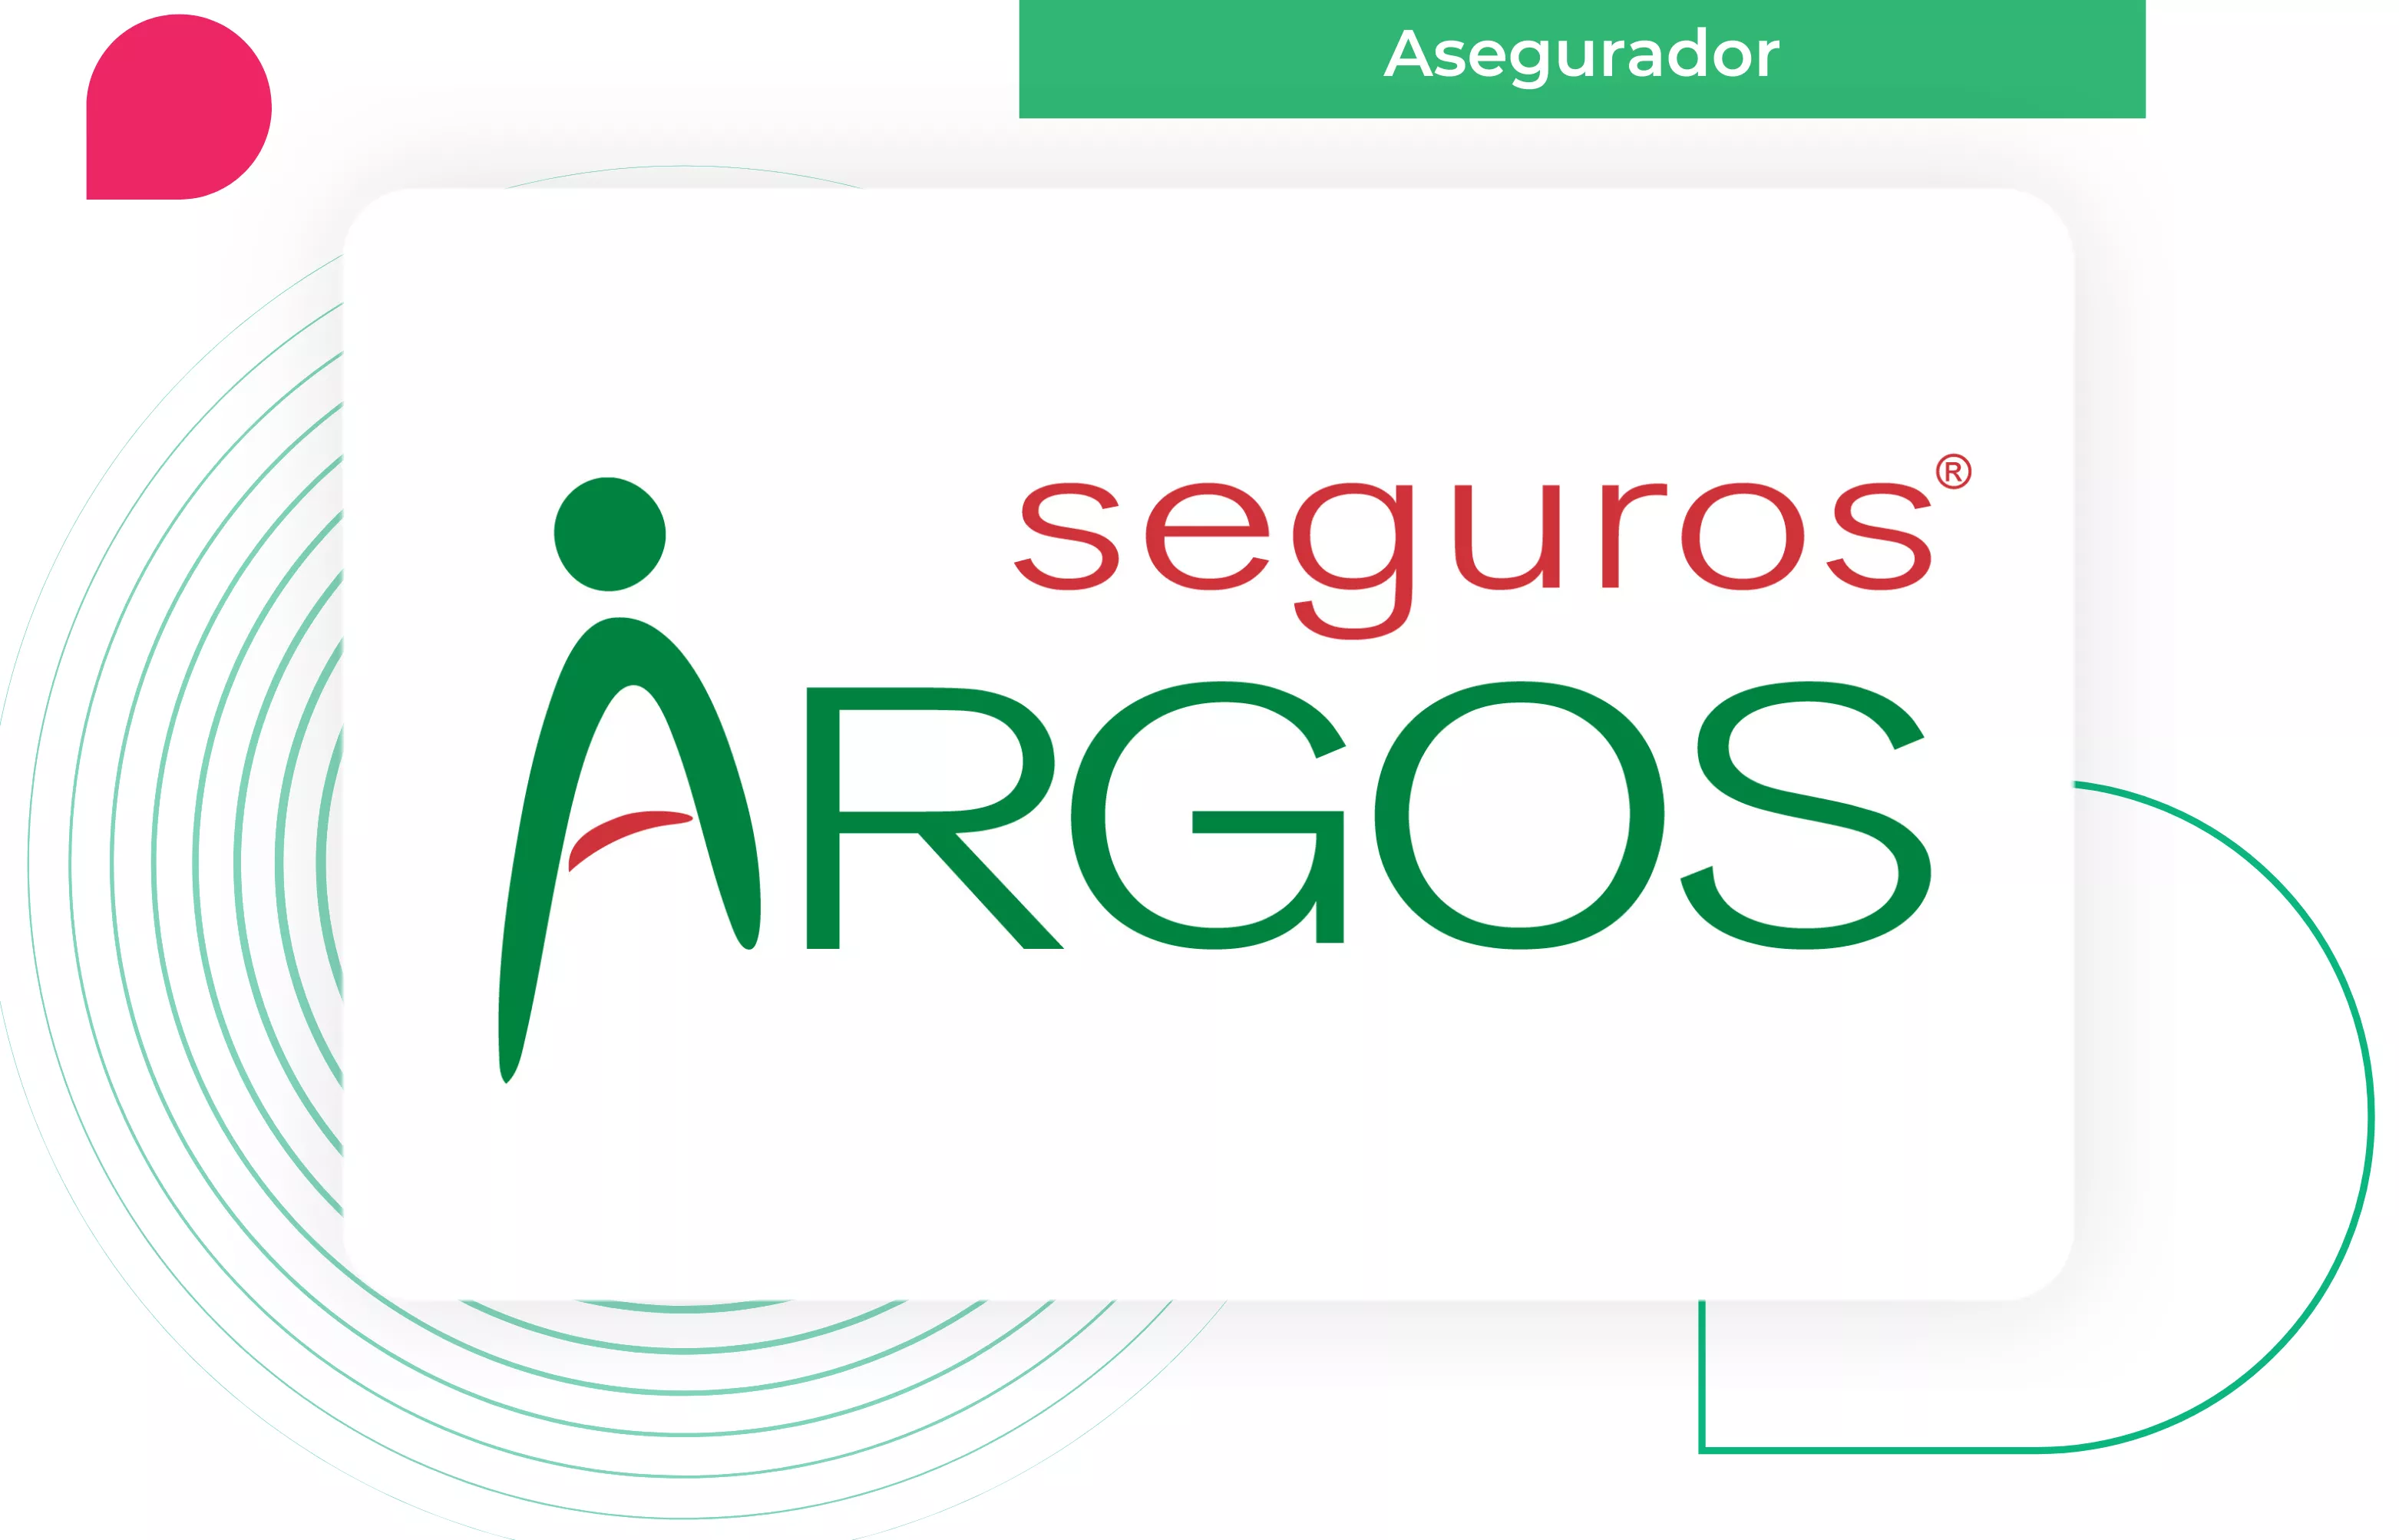 Seguros Argos - Customer Story